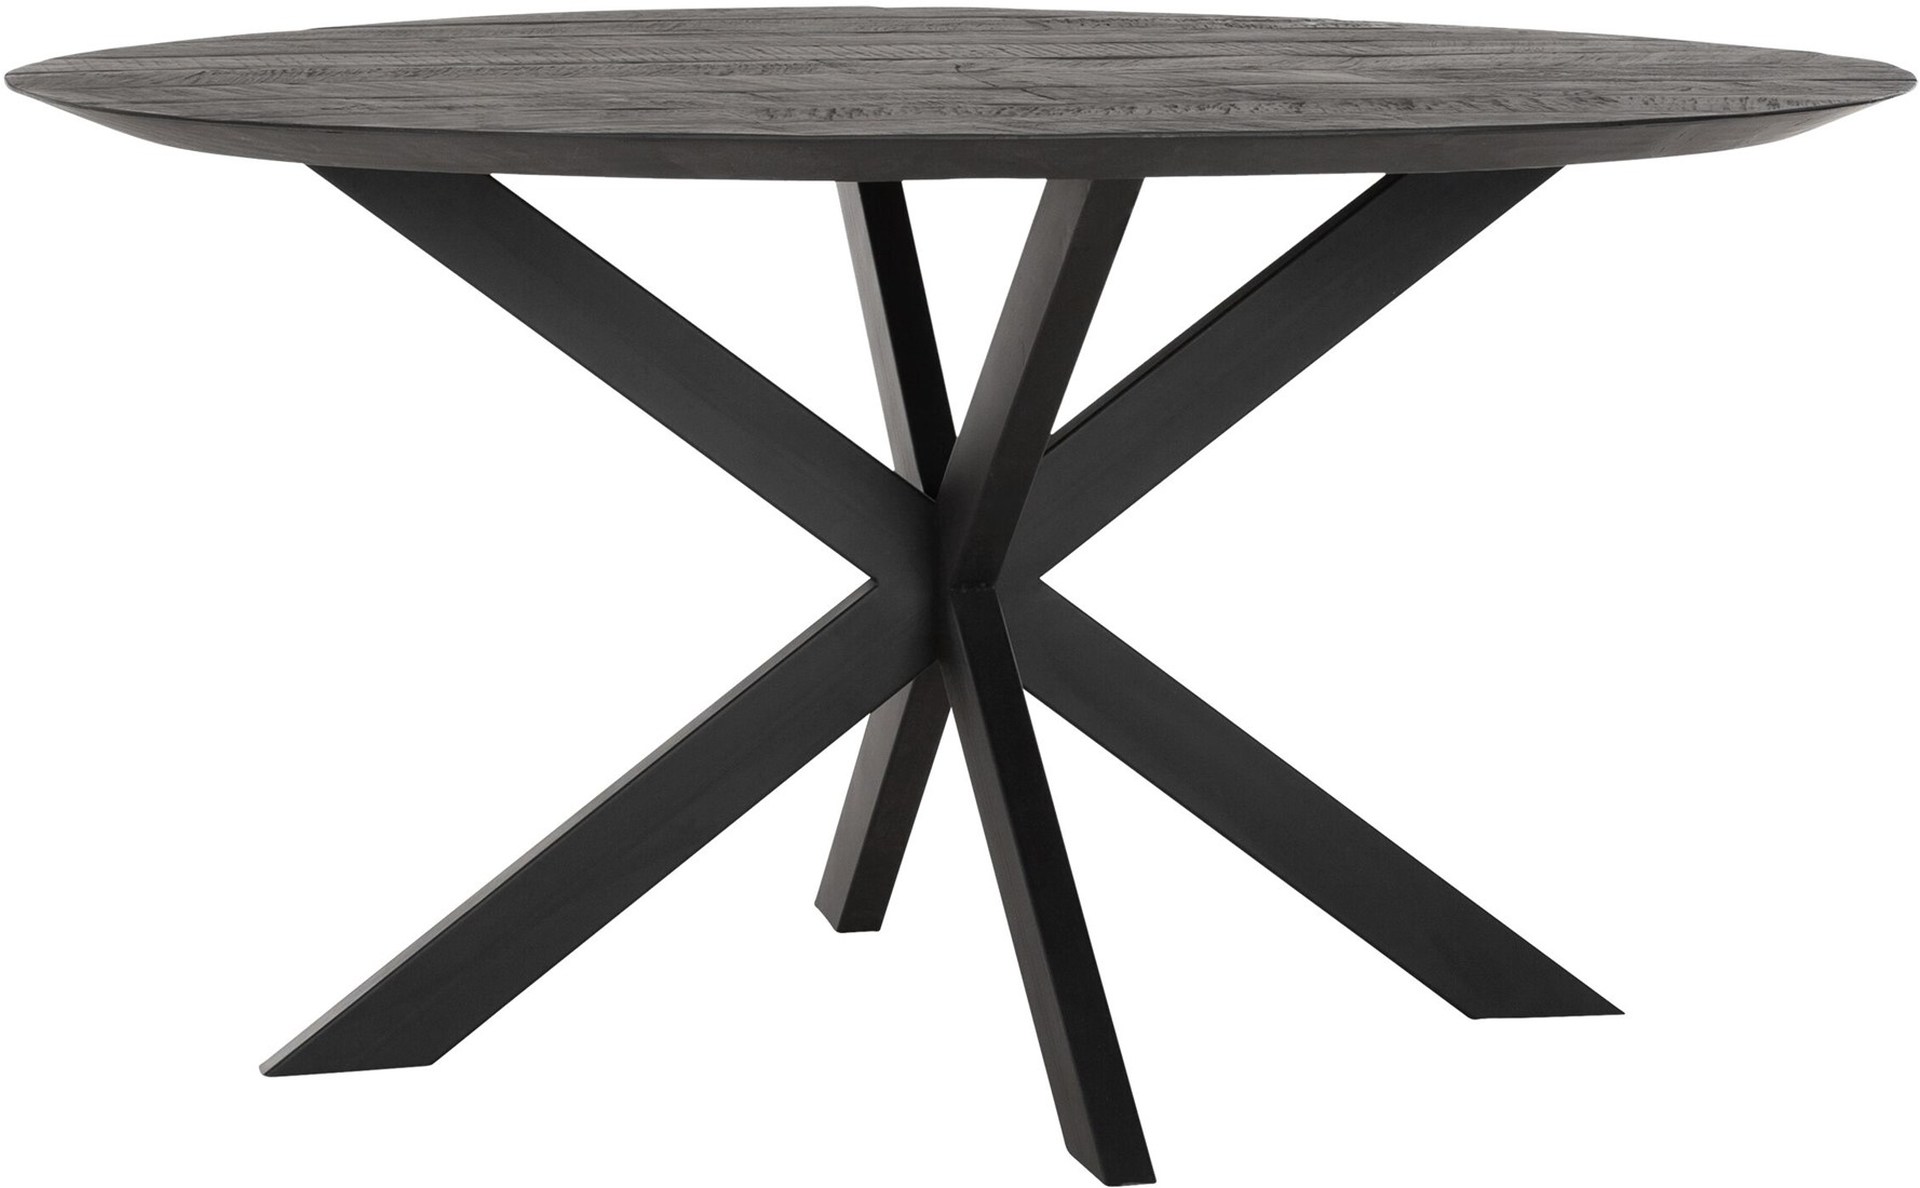 Der Esstisch Shape überzeugt mit seinem modernem aber auch massivem Design. Gefertigt wurde der Tisch aus recyceltem Teakholz, welches einen schwarzen Farbton besitzt. Das Gestell ist aus Metall und ist Schwarz. Der Tisch hat einen Durchmesser von 150 cm.